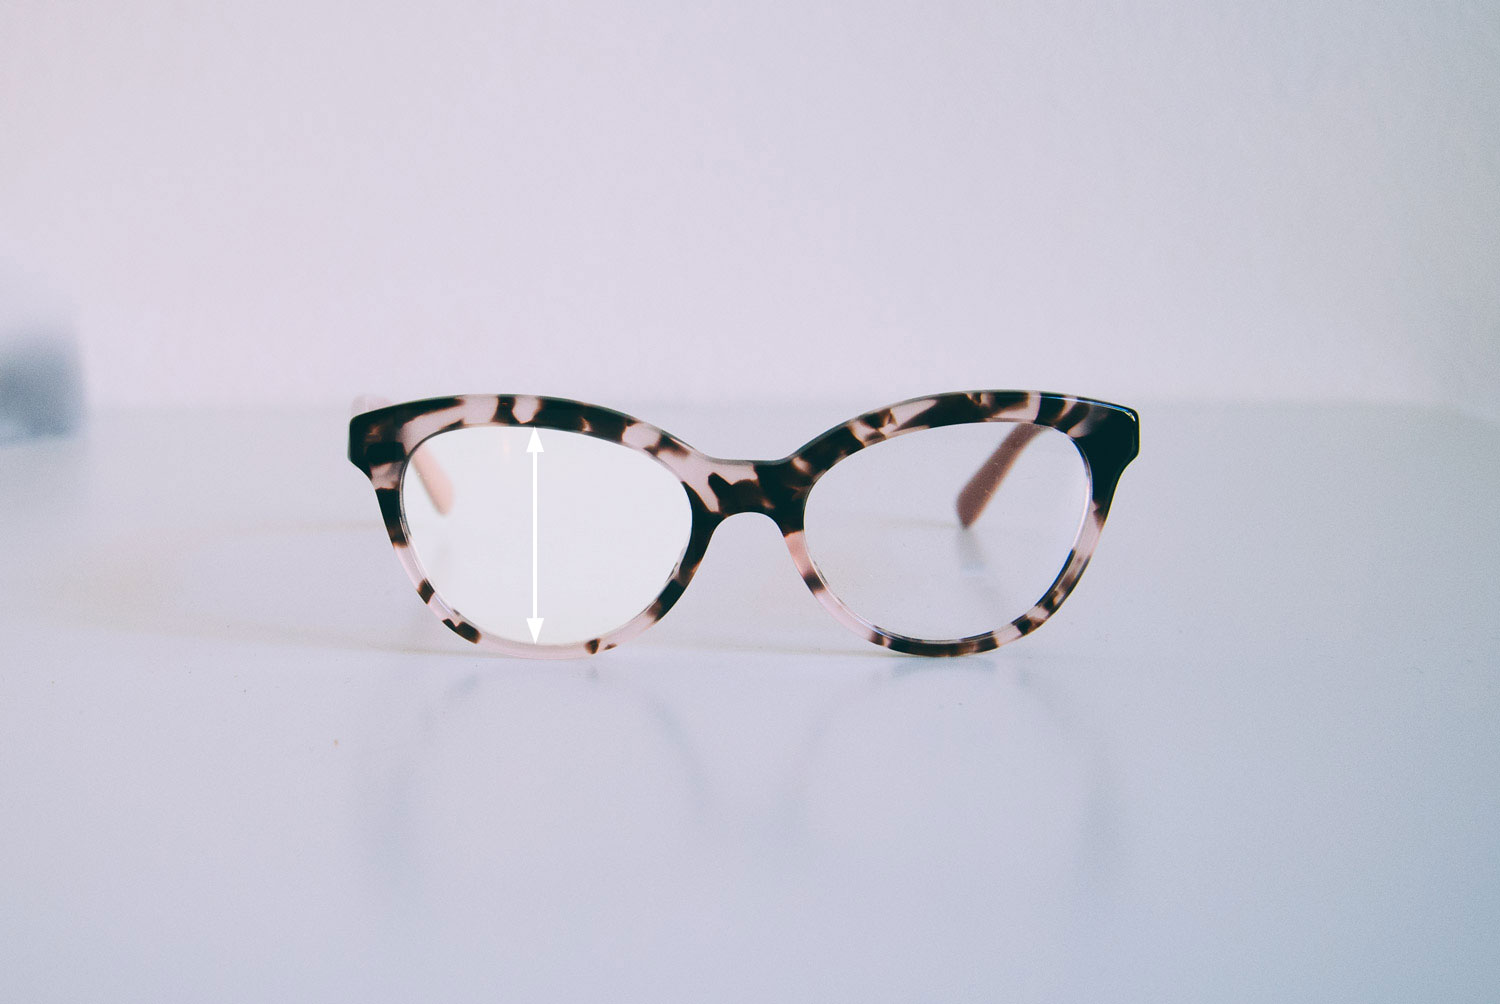 Meeting Ancient times fuse Cum să vă alegeți mărimea potrivită pentru ochelari - eyerim | eyerim blog